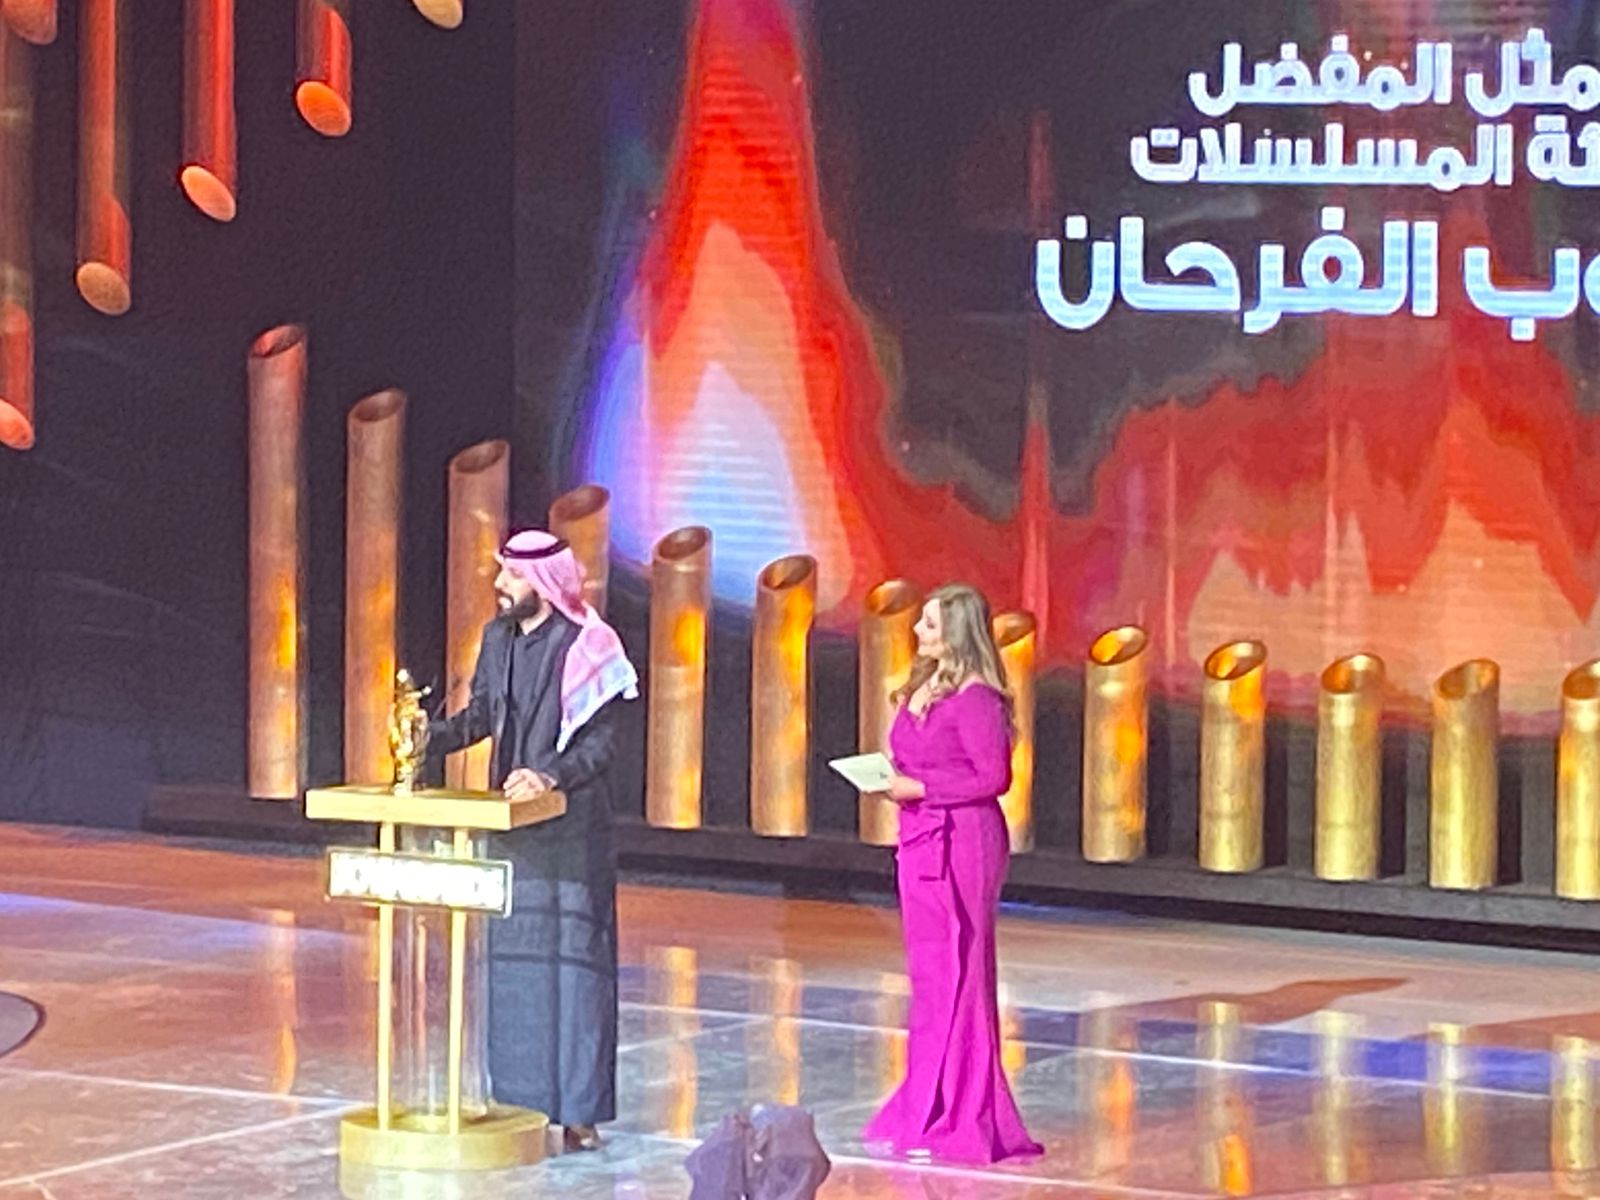 يعقوب الفرحان والهام علي يحصلان جائزة JOY AWARDS بالسعودية افضل ممثل وممثلة (6)